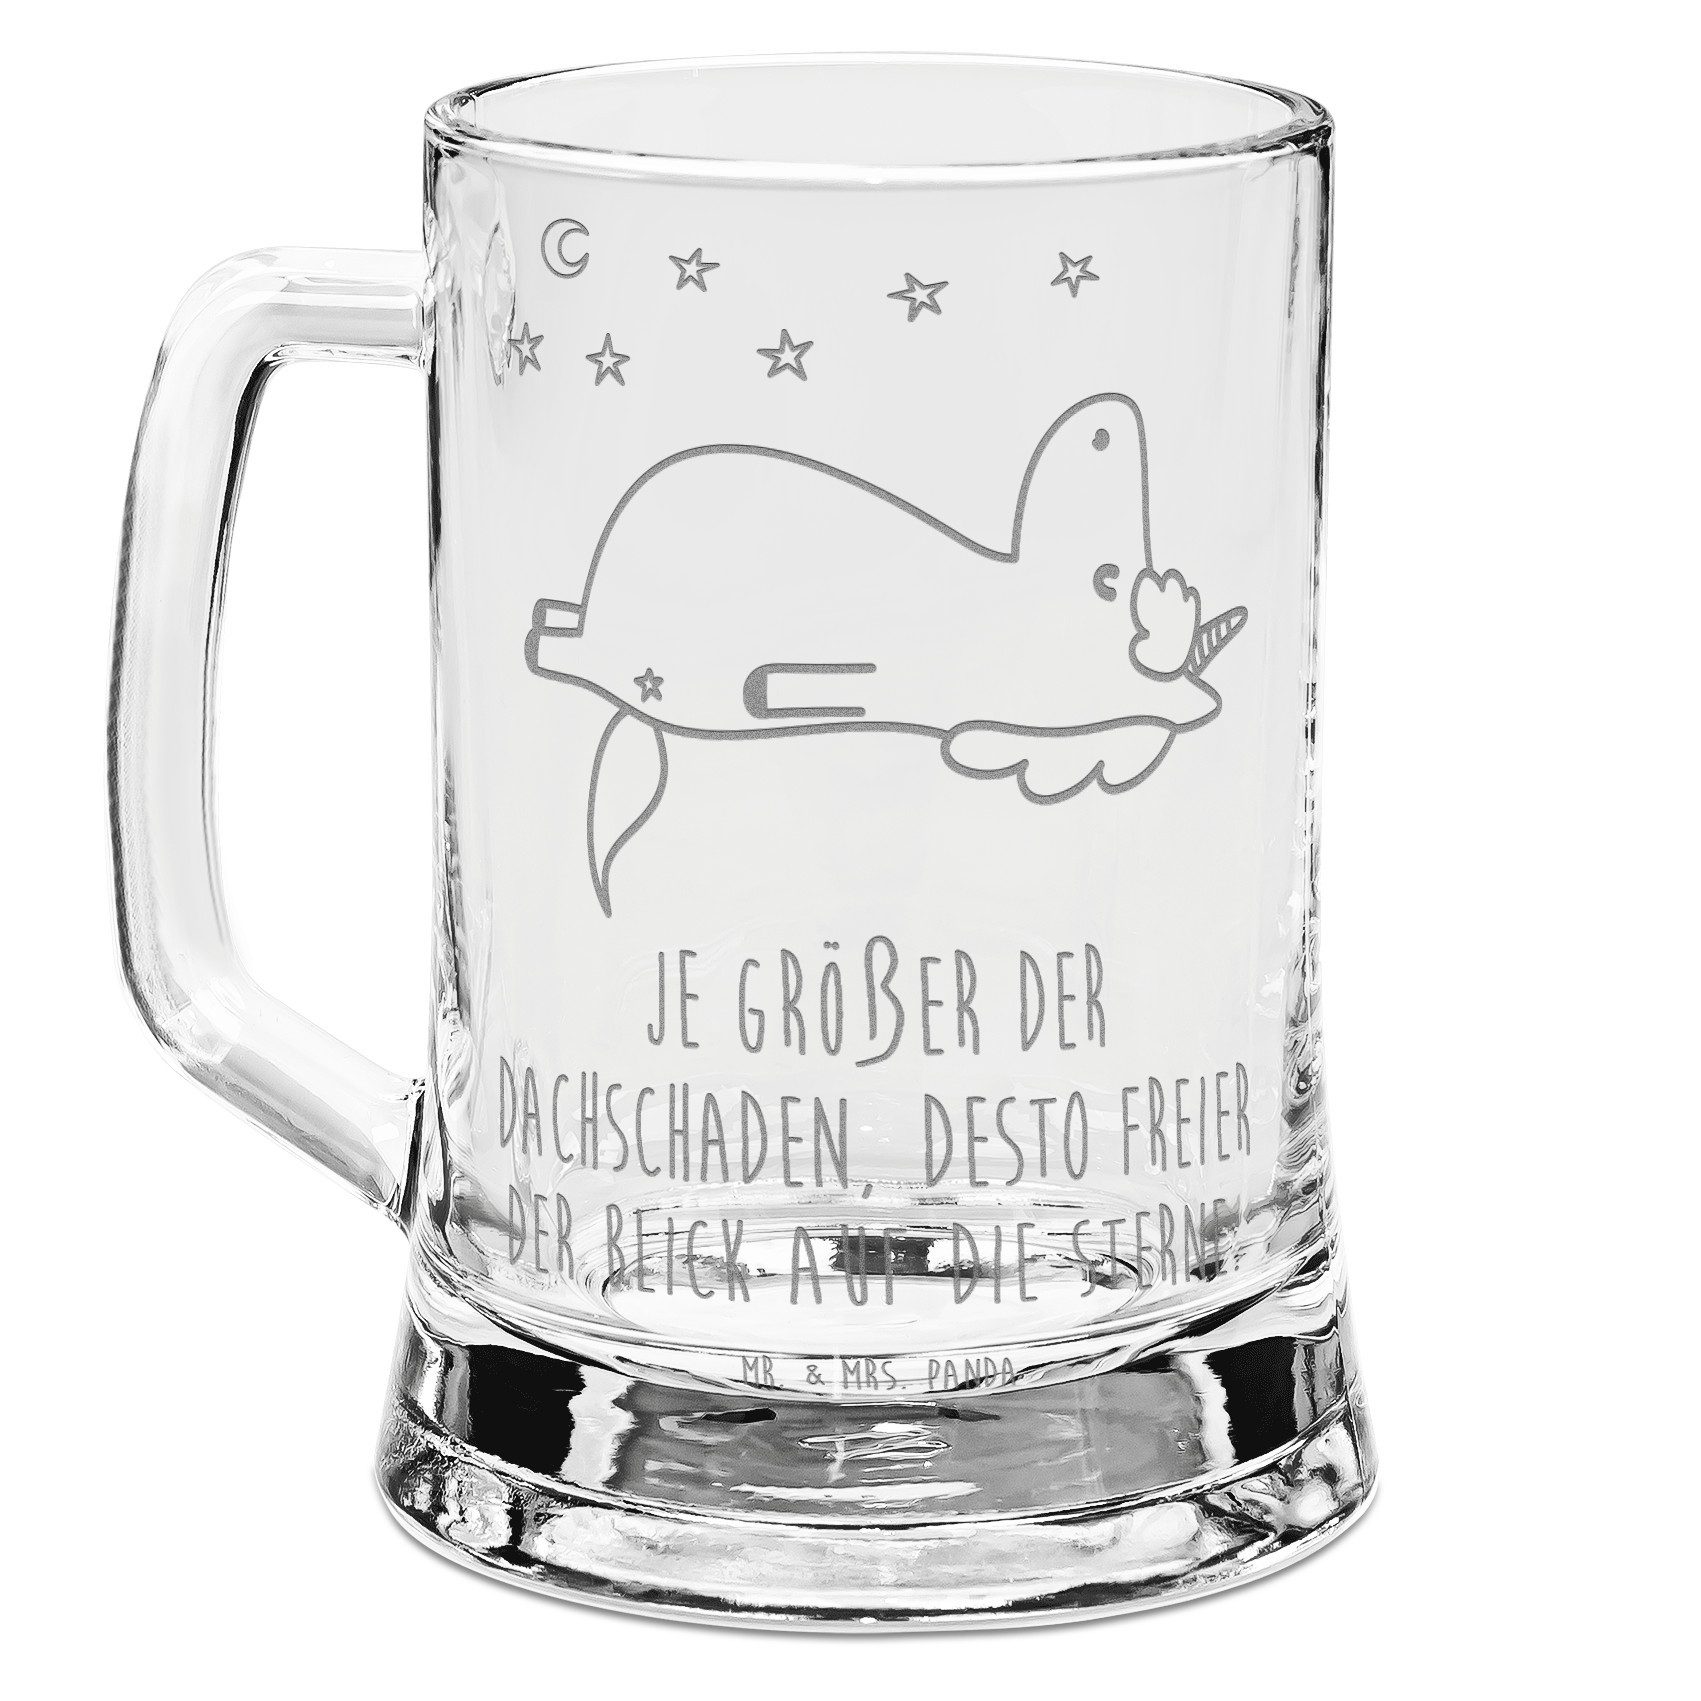 Mr. & Mrs. Panda Bierkrug Einhorn Sternenhimmel - Transparent - Geschenk, Bierkrug Glas, Bier K, Premium Glas, Elegantes Design